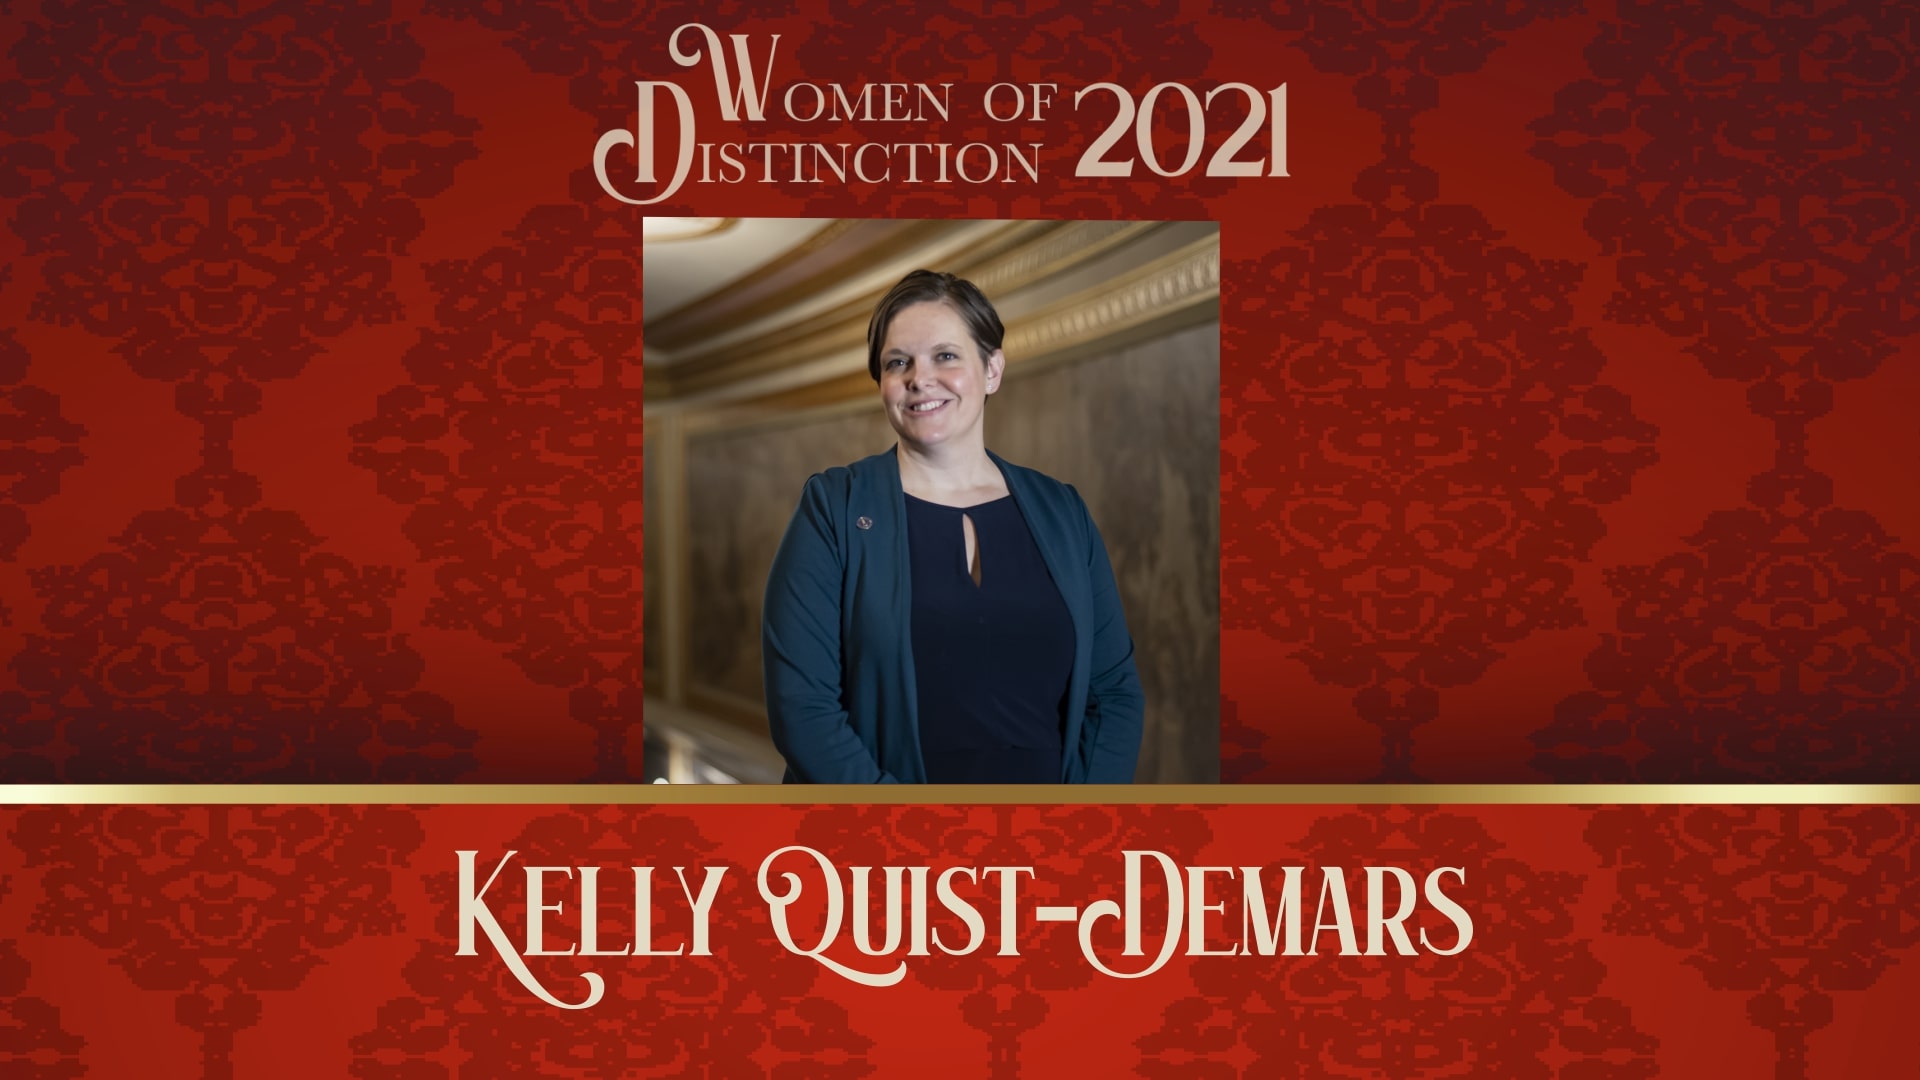 Kelly Quist-Demars